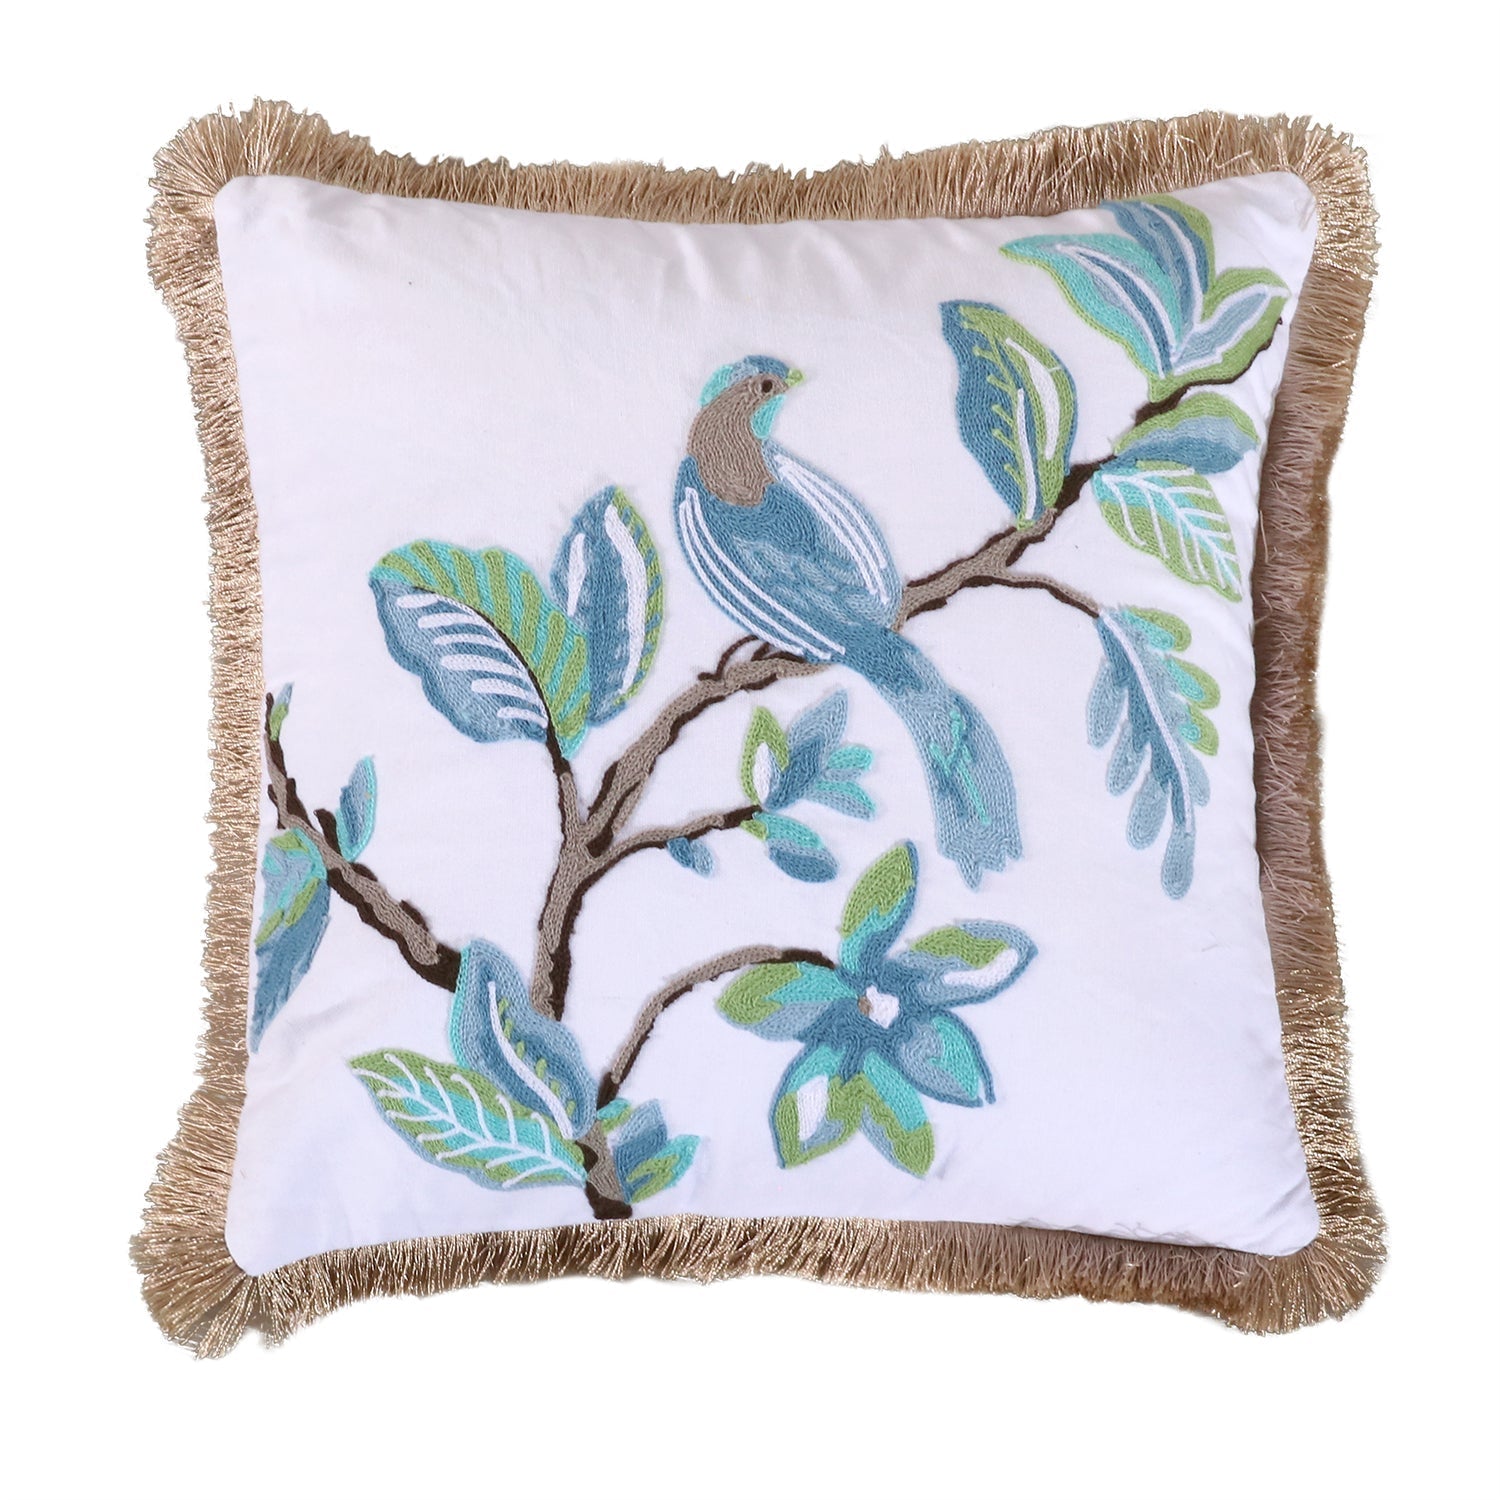 Cressida Bird Pillow